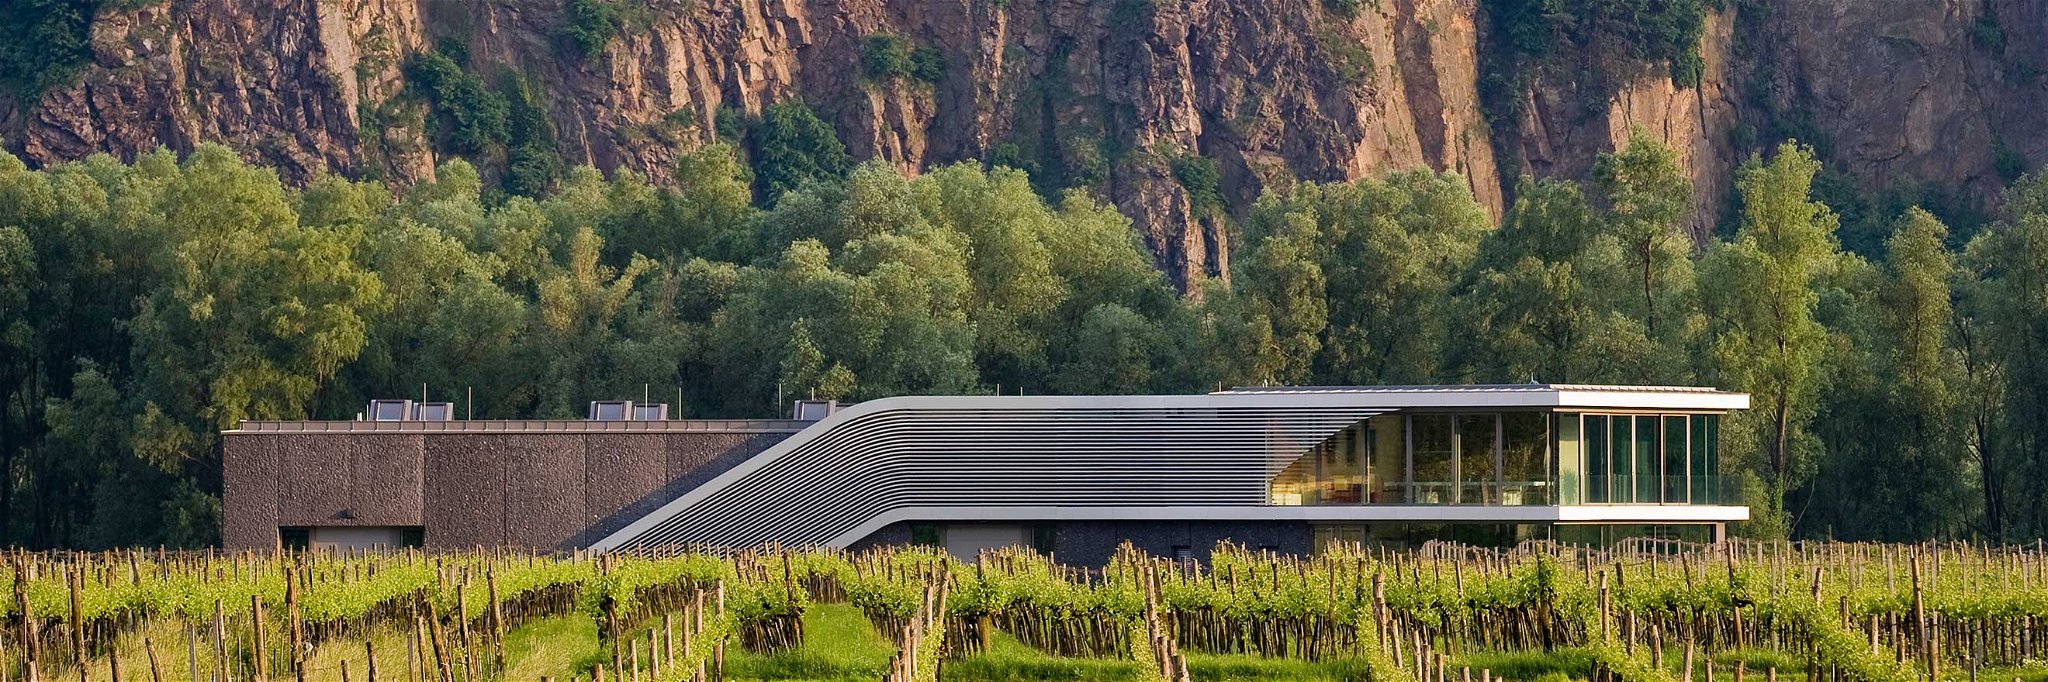 Das Weingut F.X. Pichler in der Wachau setzte gemeinsam mit architekten TAUBER neue Maßstäbe in Sachen moderne Weinbauarchitektur.